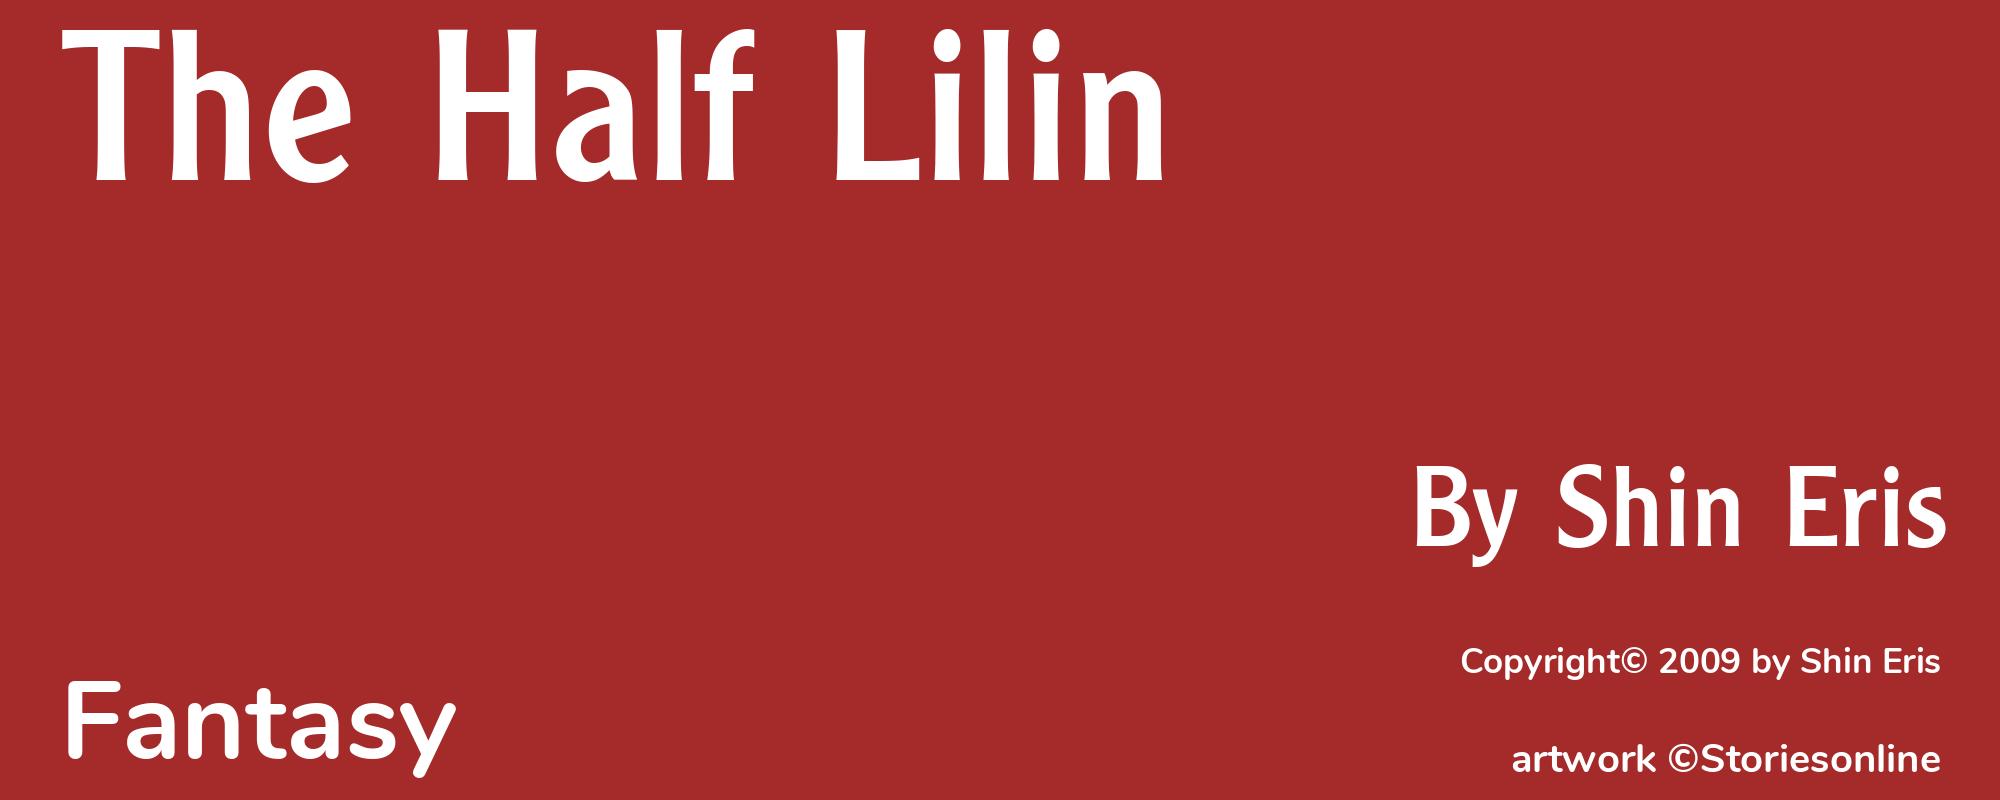 The Half Lilin - Cover